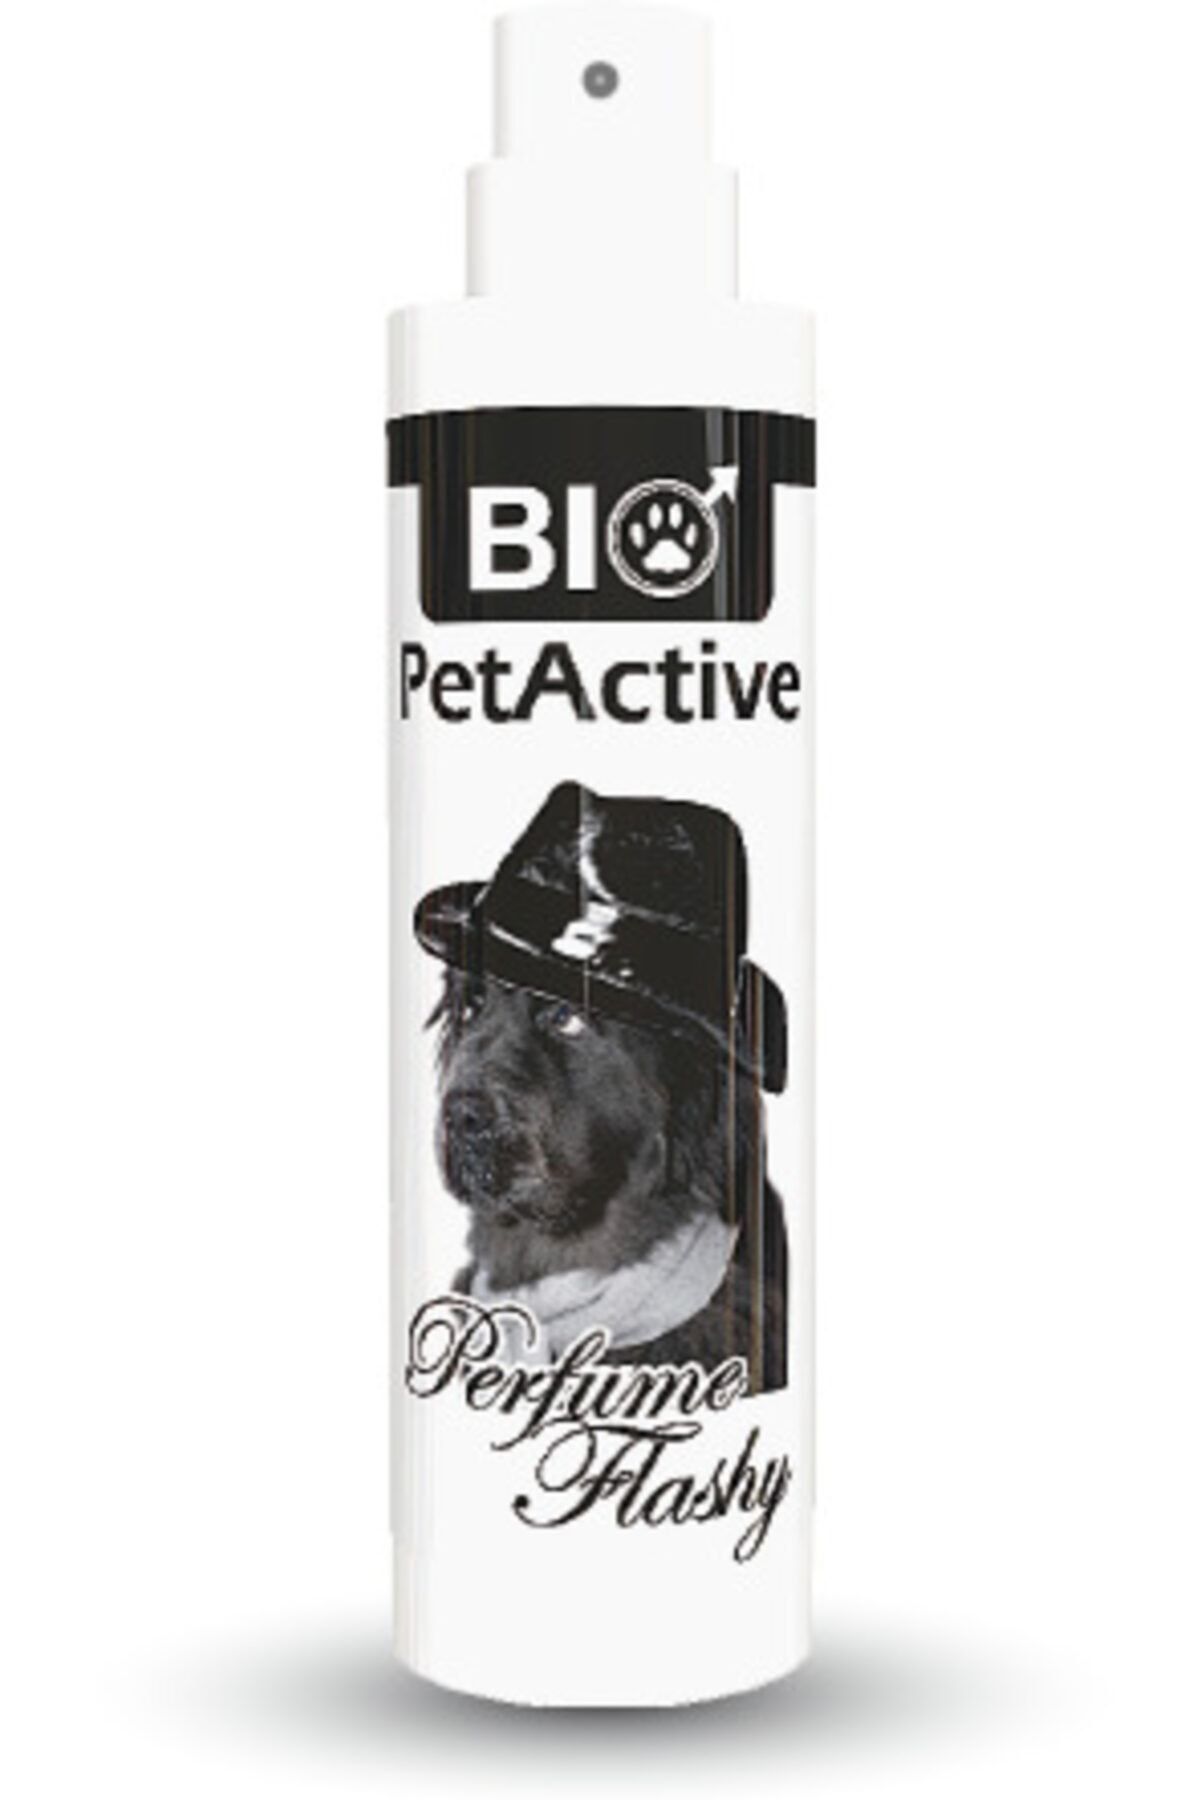 Bio PetActive Perfume Flashy| Kedi Ve Köpekler Için Parfüm 50 Ml.